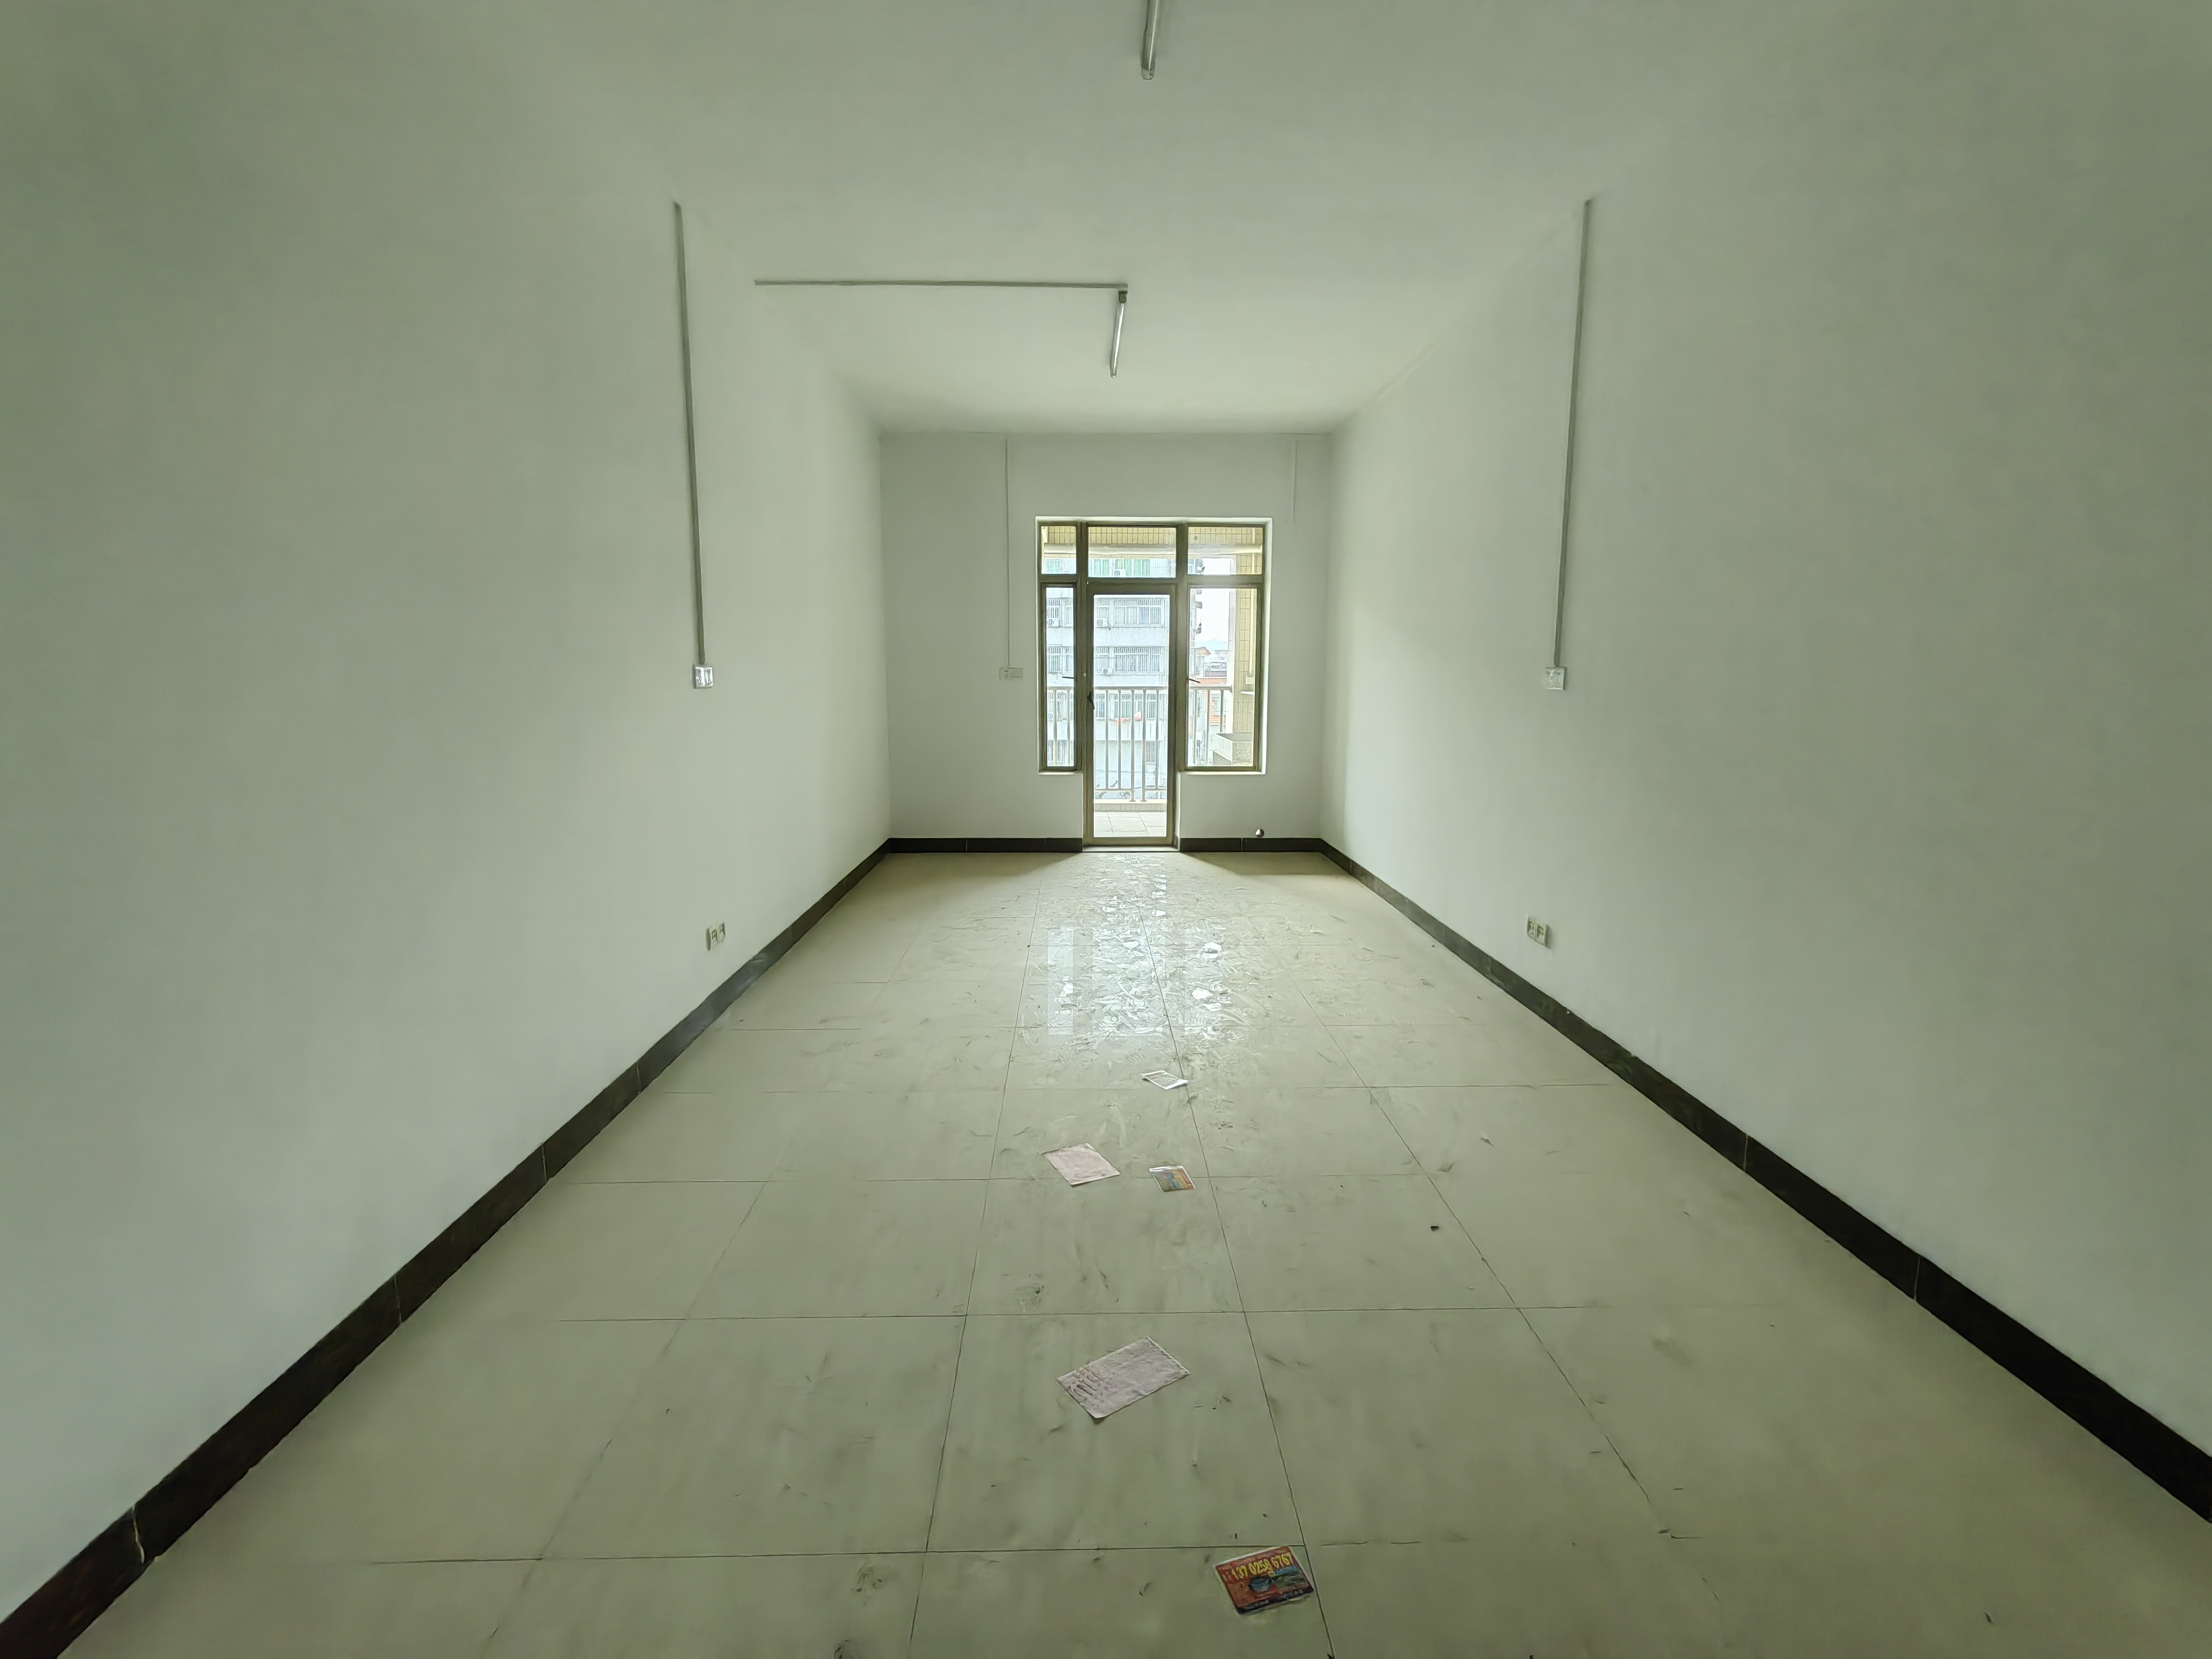 海逸公寓 北 精装 1室 1厅 46m² -深圳海逸公寓租房